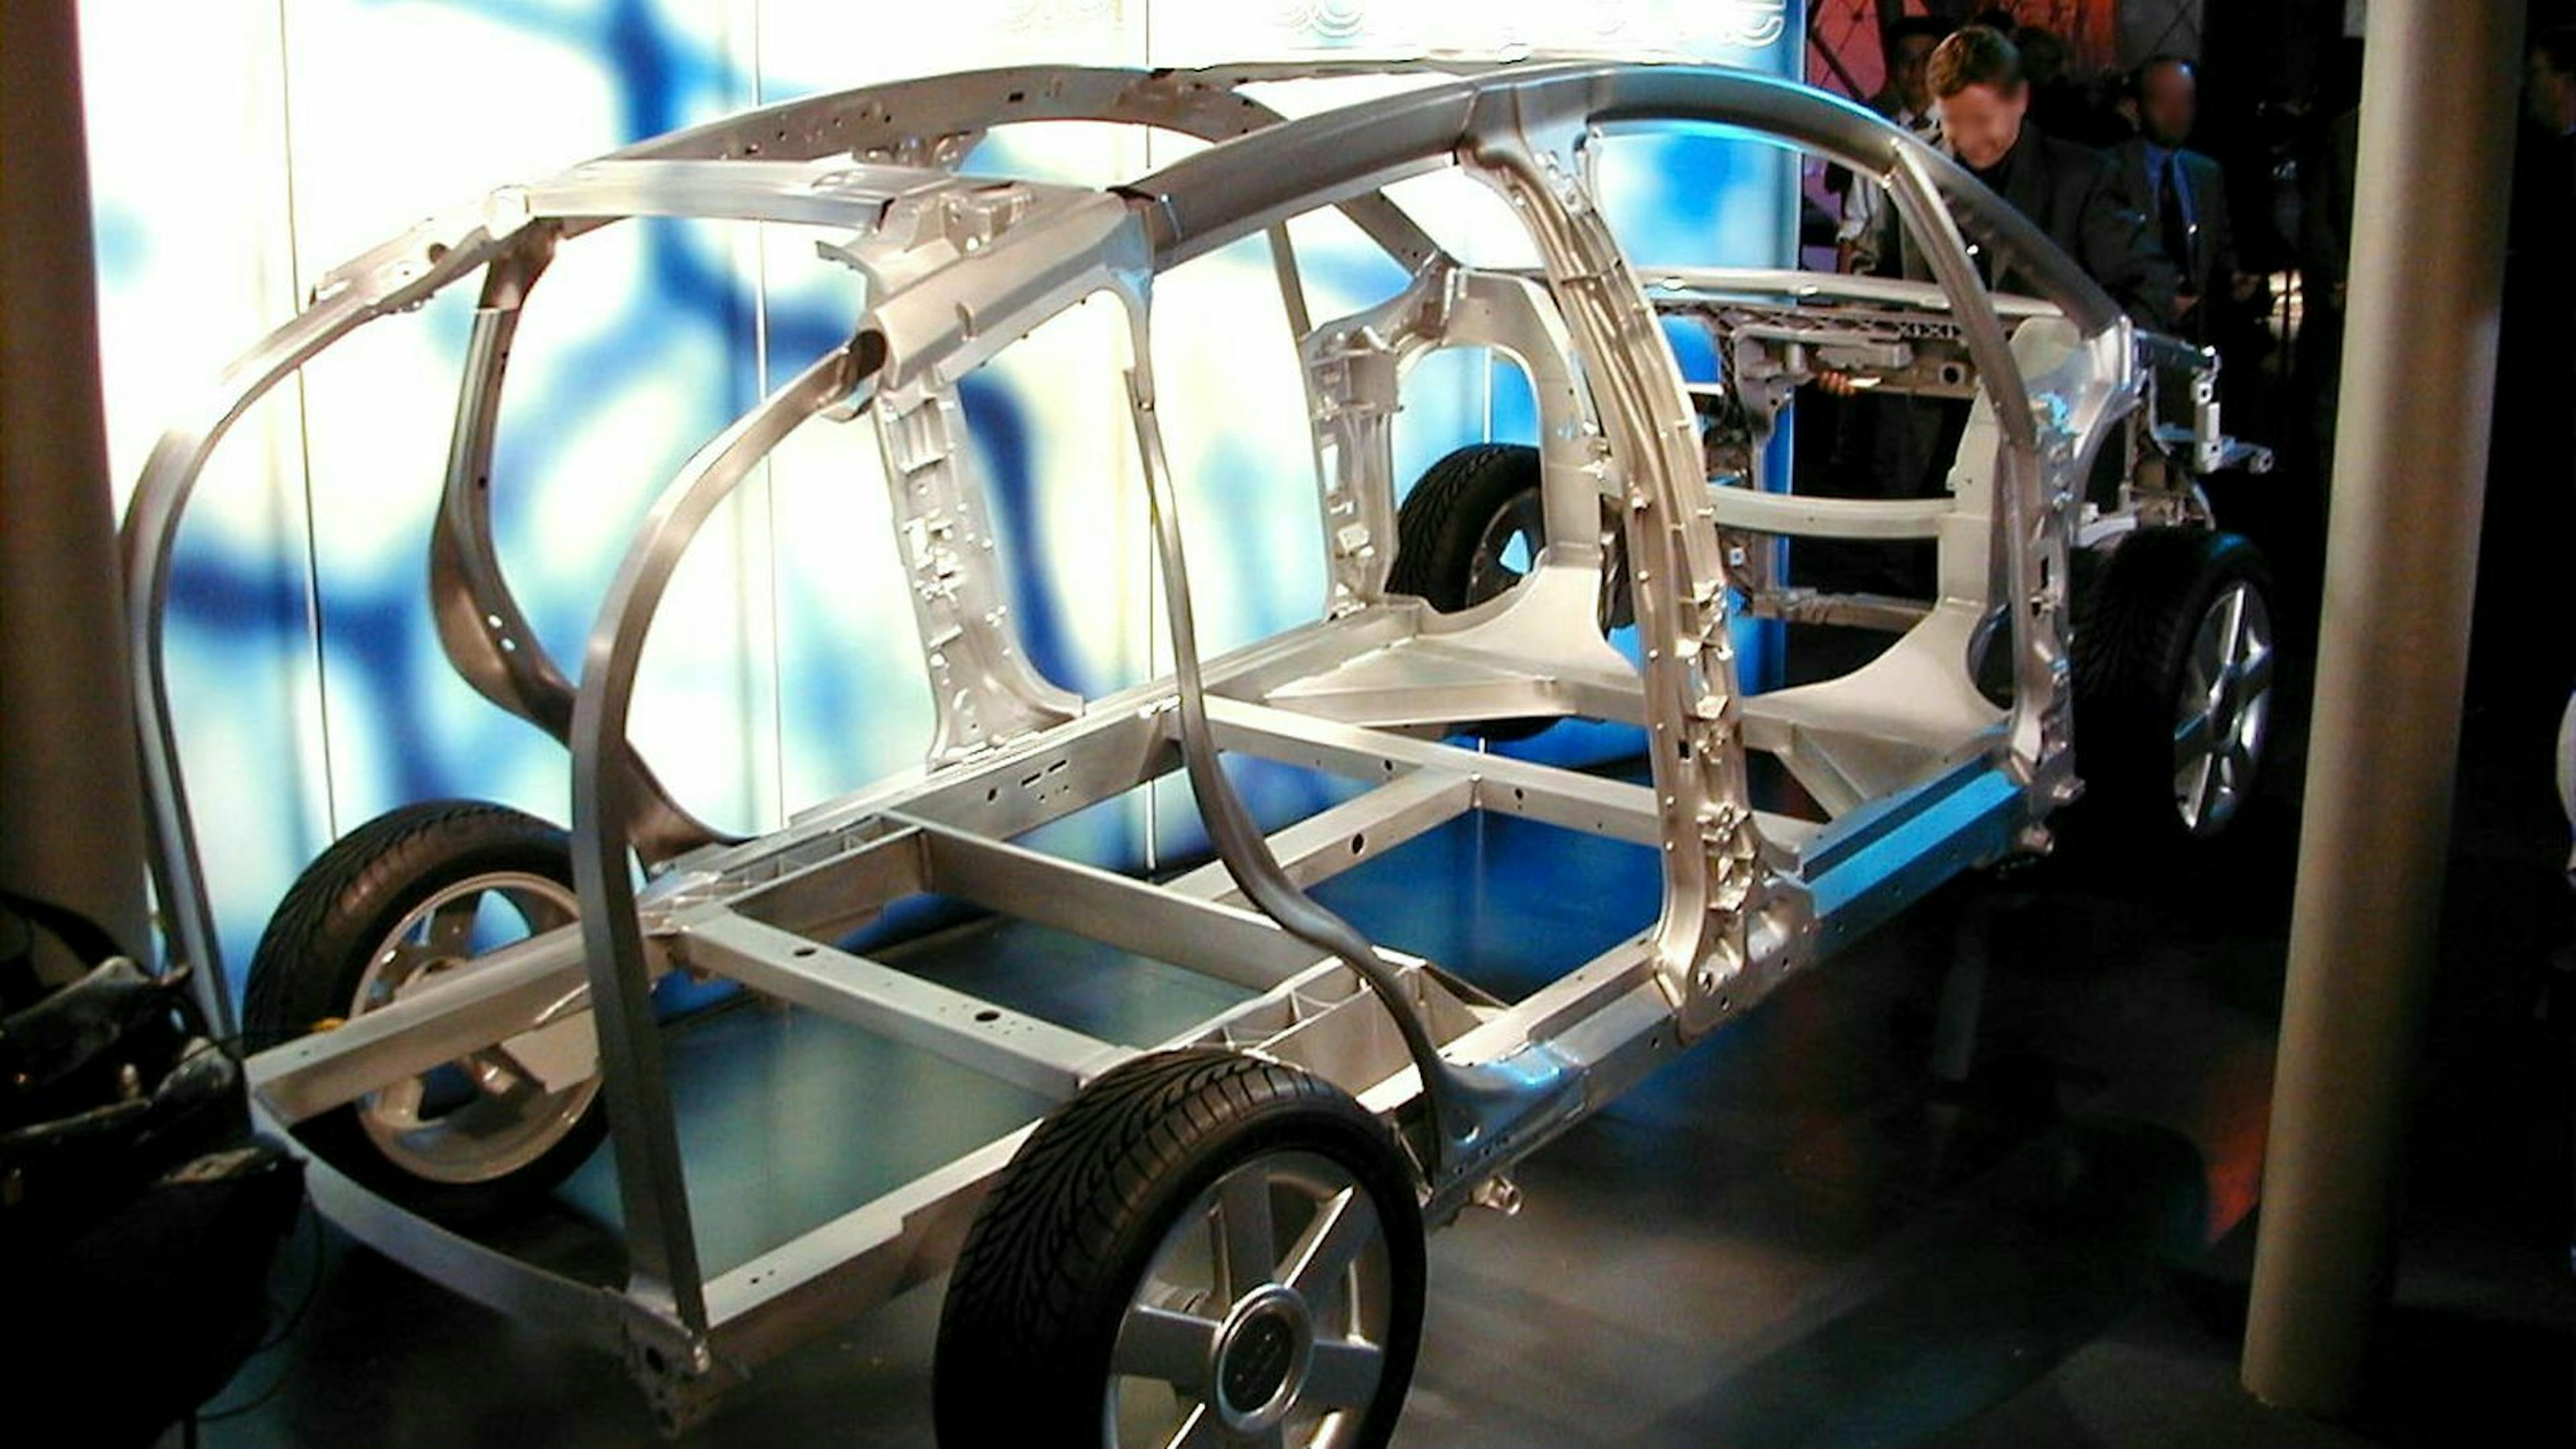 Der Audi A2 bestand im Kern aus einem Alu-Rahmen mit Karossserieteilen